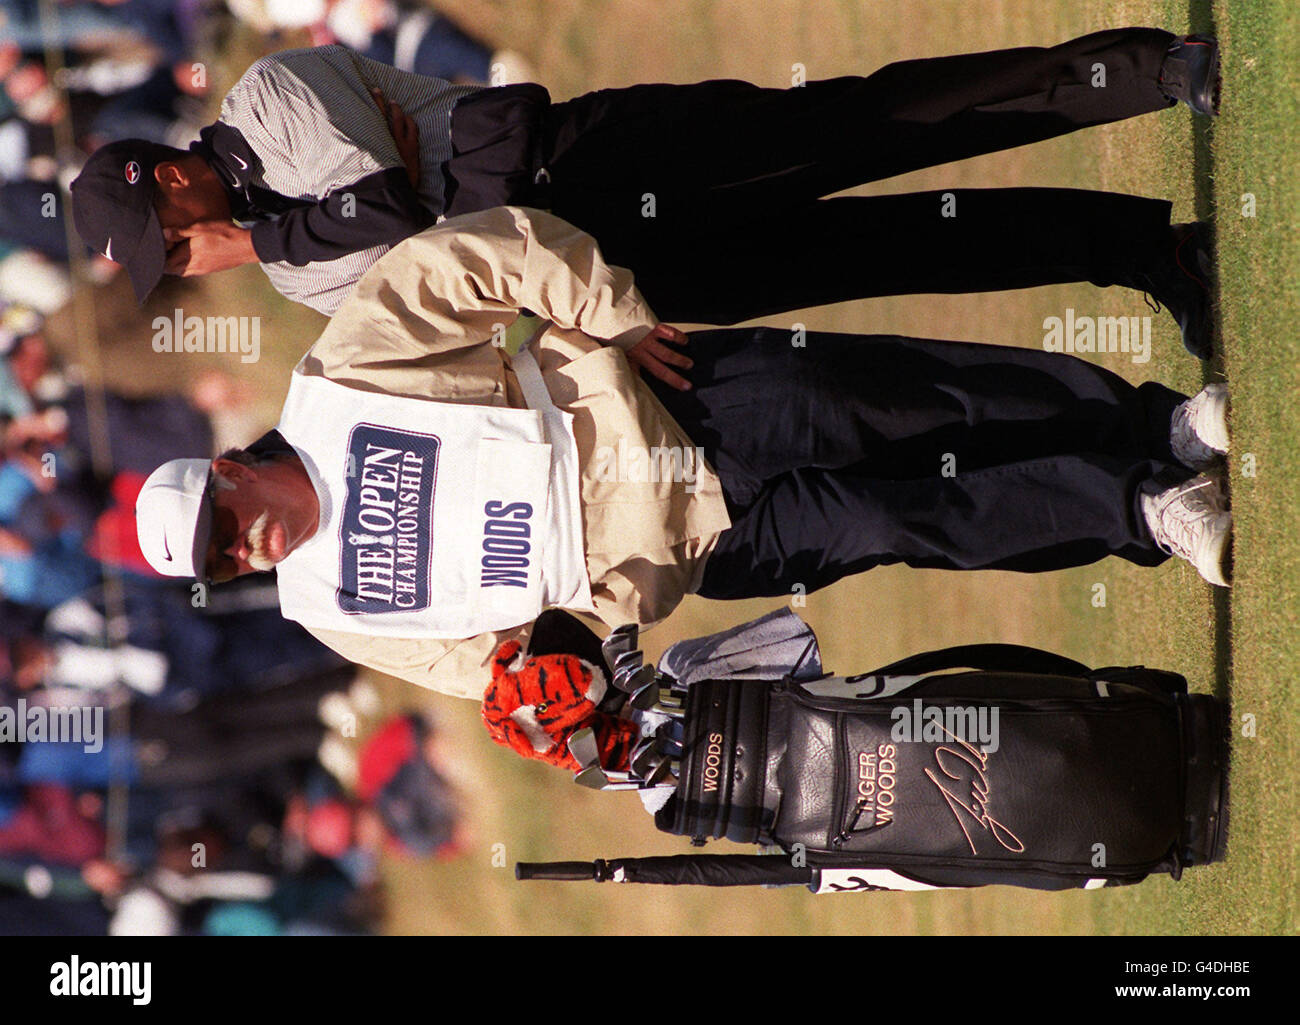 Tiger Woods (à droite) semble inquiet au cours de son troisième tour du Championnat d'Open à Royal Birkdale, aujourd'hui (samedi), alors qu'il continuait à lâcher des tirs, tandis que le caddie Mike 'Feffn' Cowan ne montre aucune émotion. Photo Rebecca Naden/ PA Banque D'Images